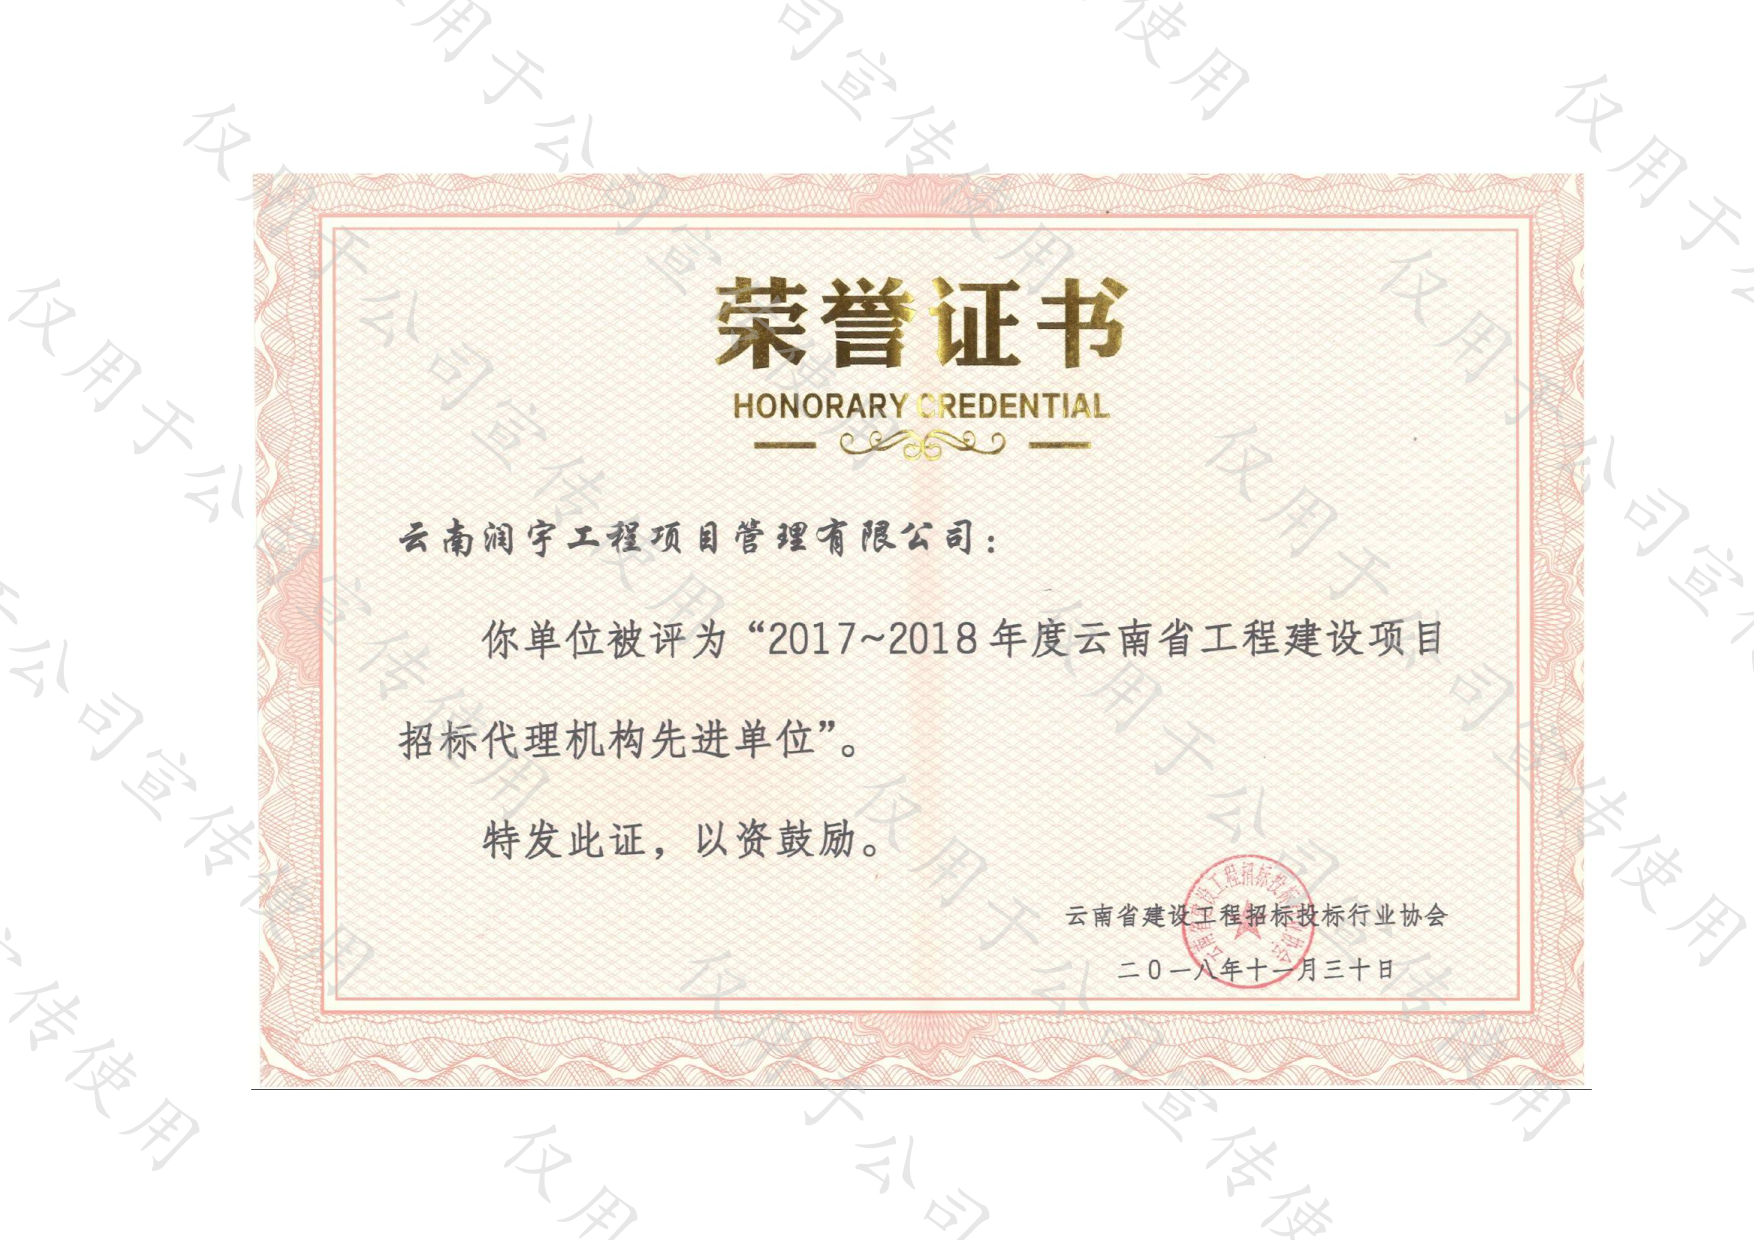 2017-2018年度云南省工程建设项目招标代理机构先进单位